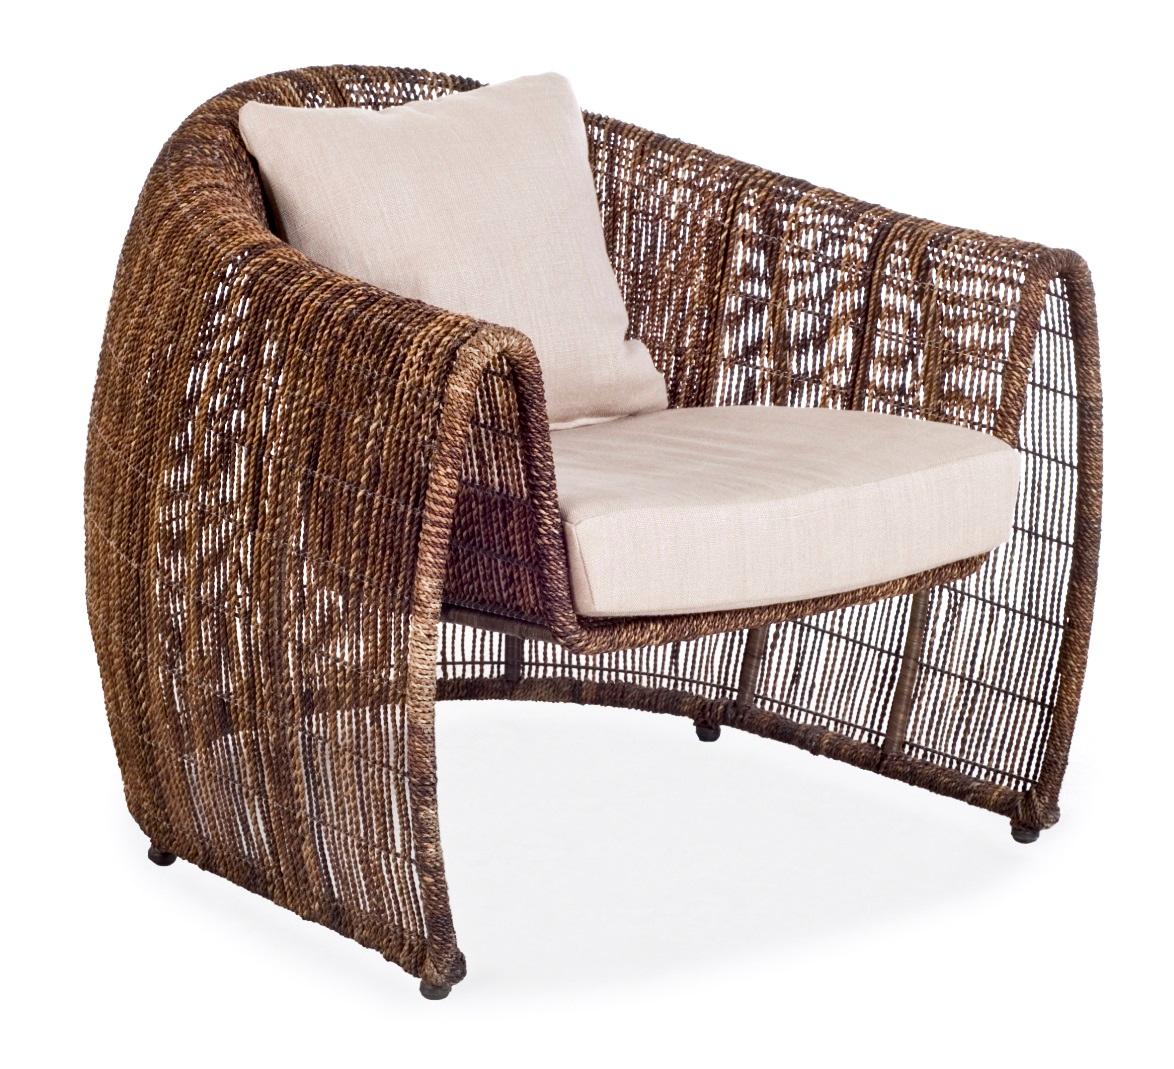 Lulu Easy Sessel für drinnen von Kenneth Cobonpue
MATERIALIEN: Abaca, Nylon, Stahl. 
Auch in anderen Farben und für den Außenbereich erhältlich.
Abmessungen: 87,5 cm x 90 cm x H 76 cm

Mit ihrer klaren, nestartigen Silhouette verleiht Lulu